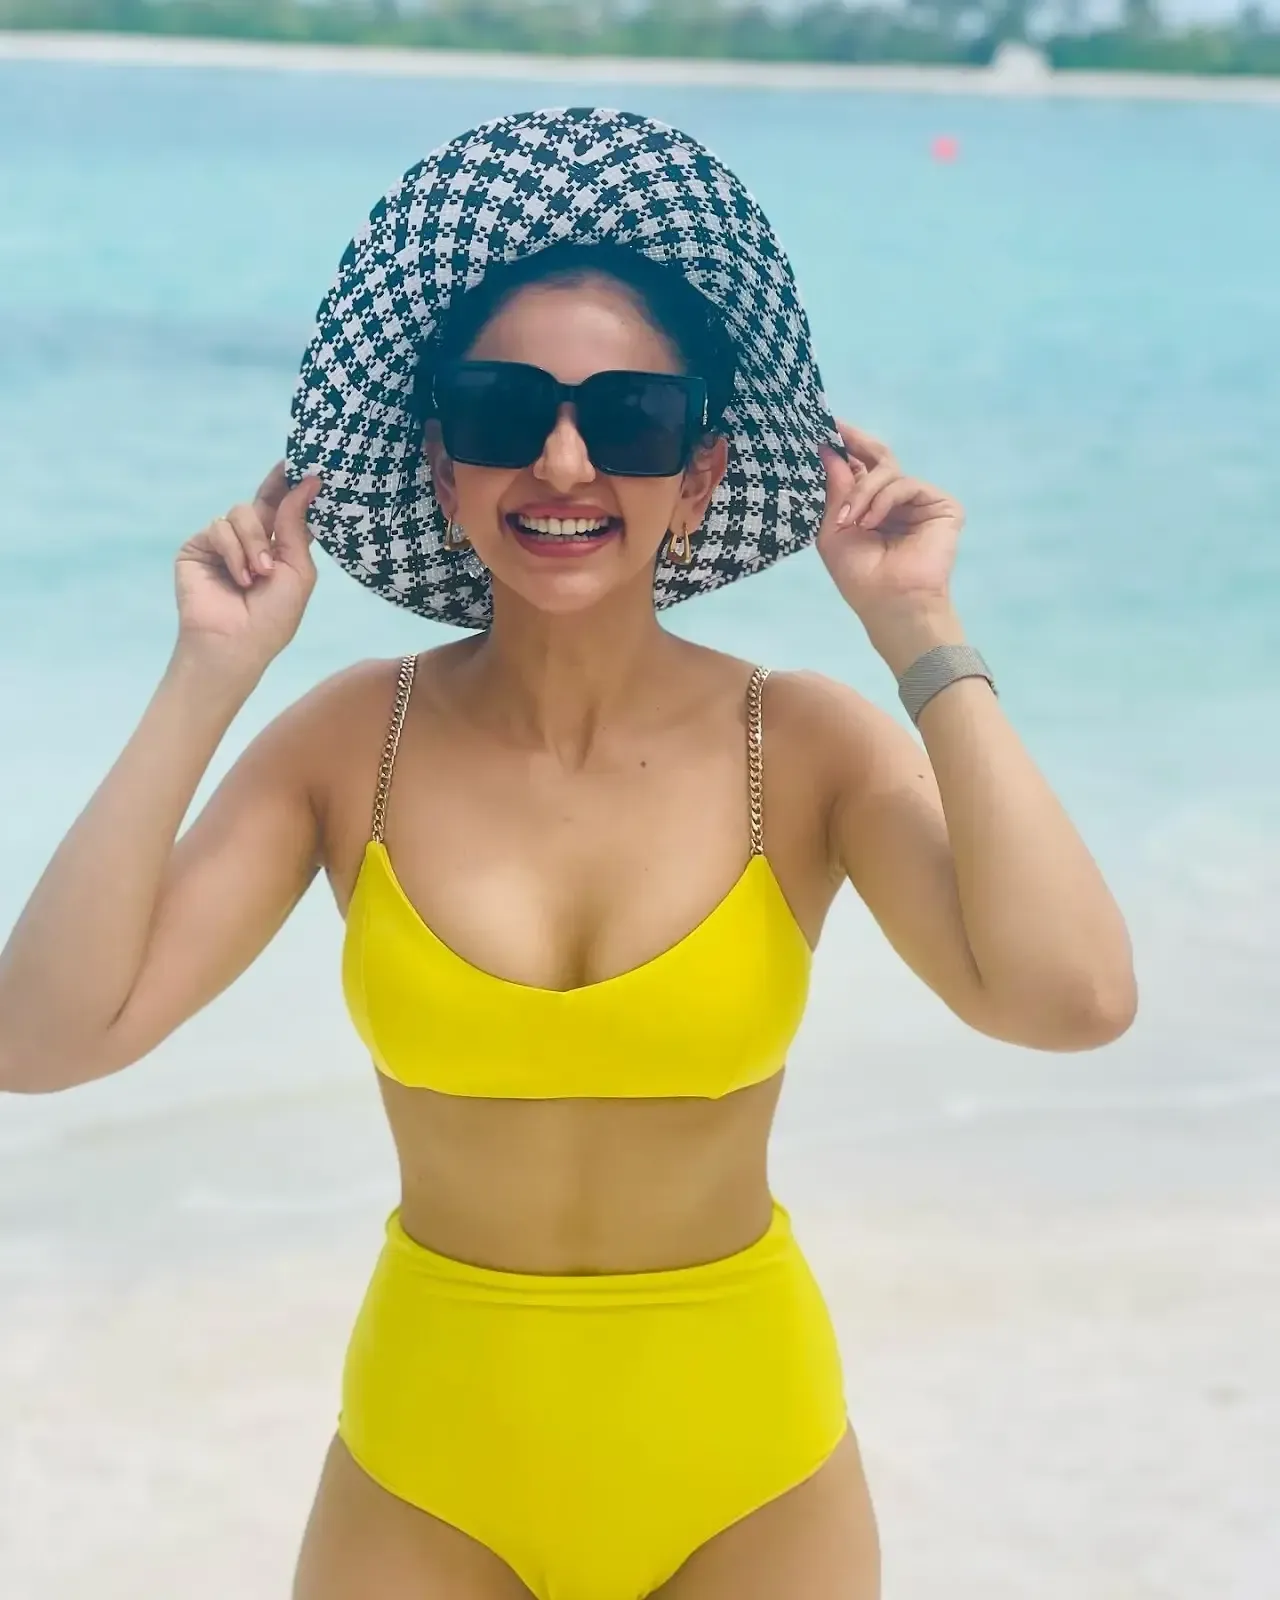 Indian Girl Rakul Preet Singh Hot Photoshoot in Beach in Yellow Bikini